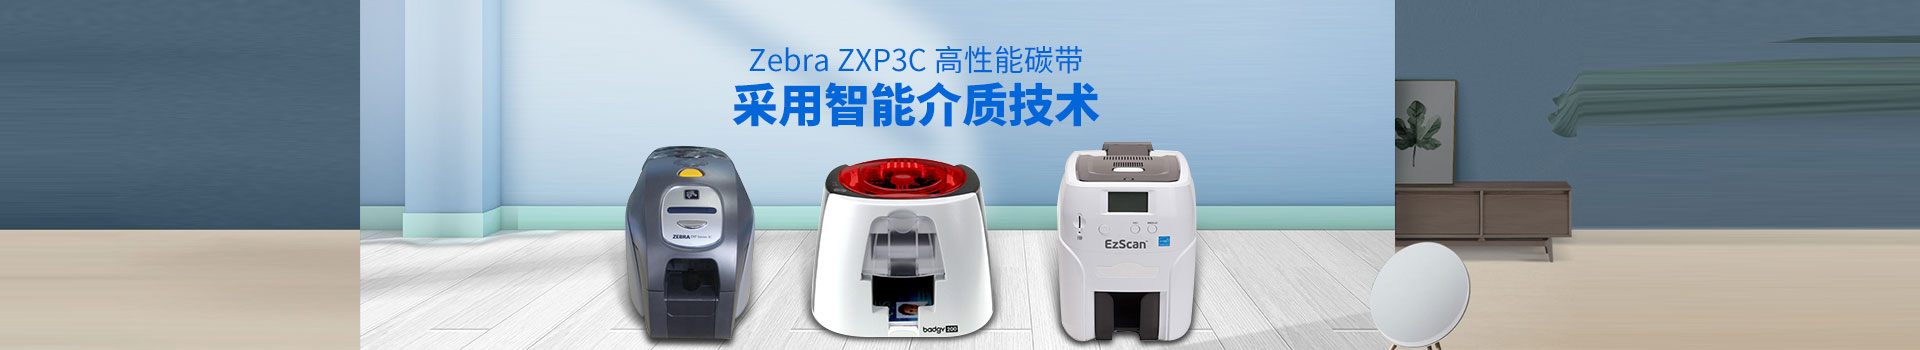 谷梁-Zebra ZXP3C高性能碳带,采用智能介质技术